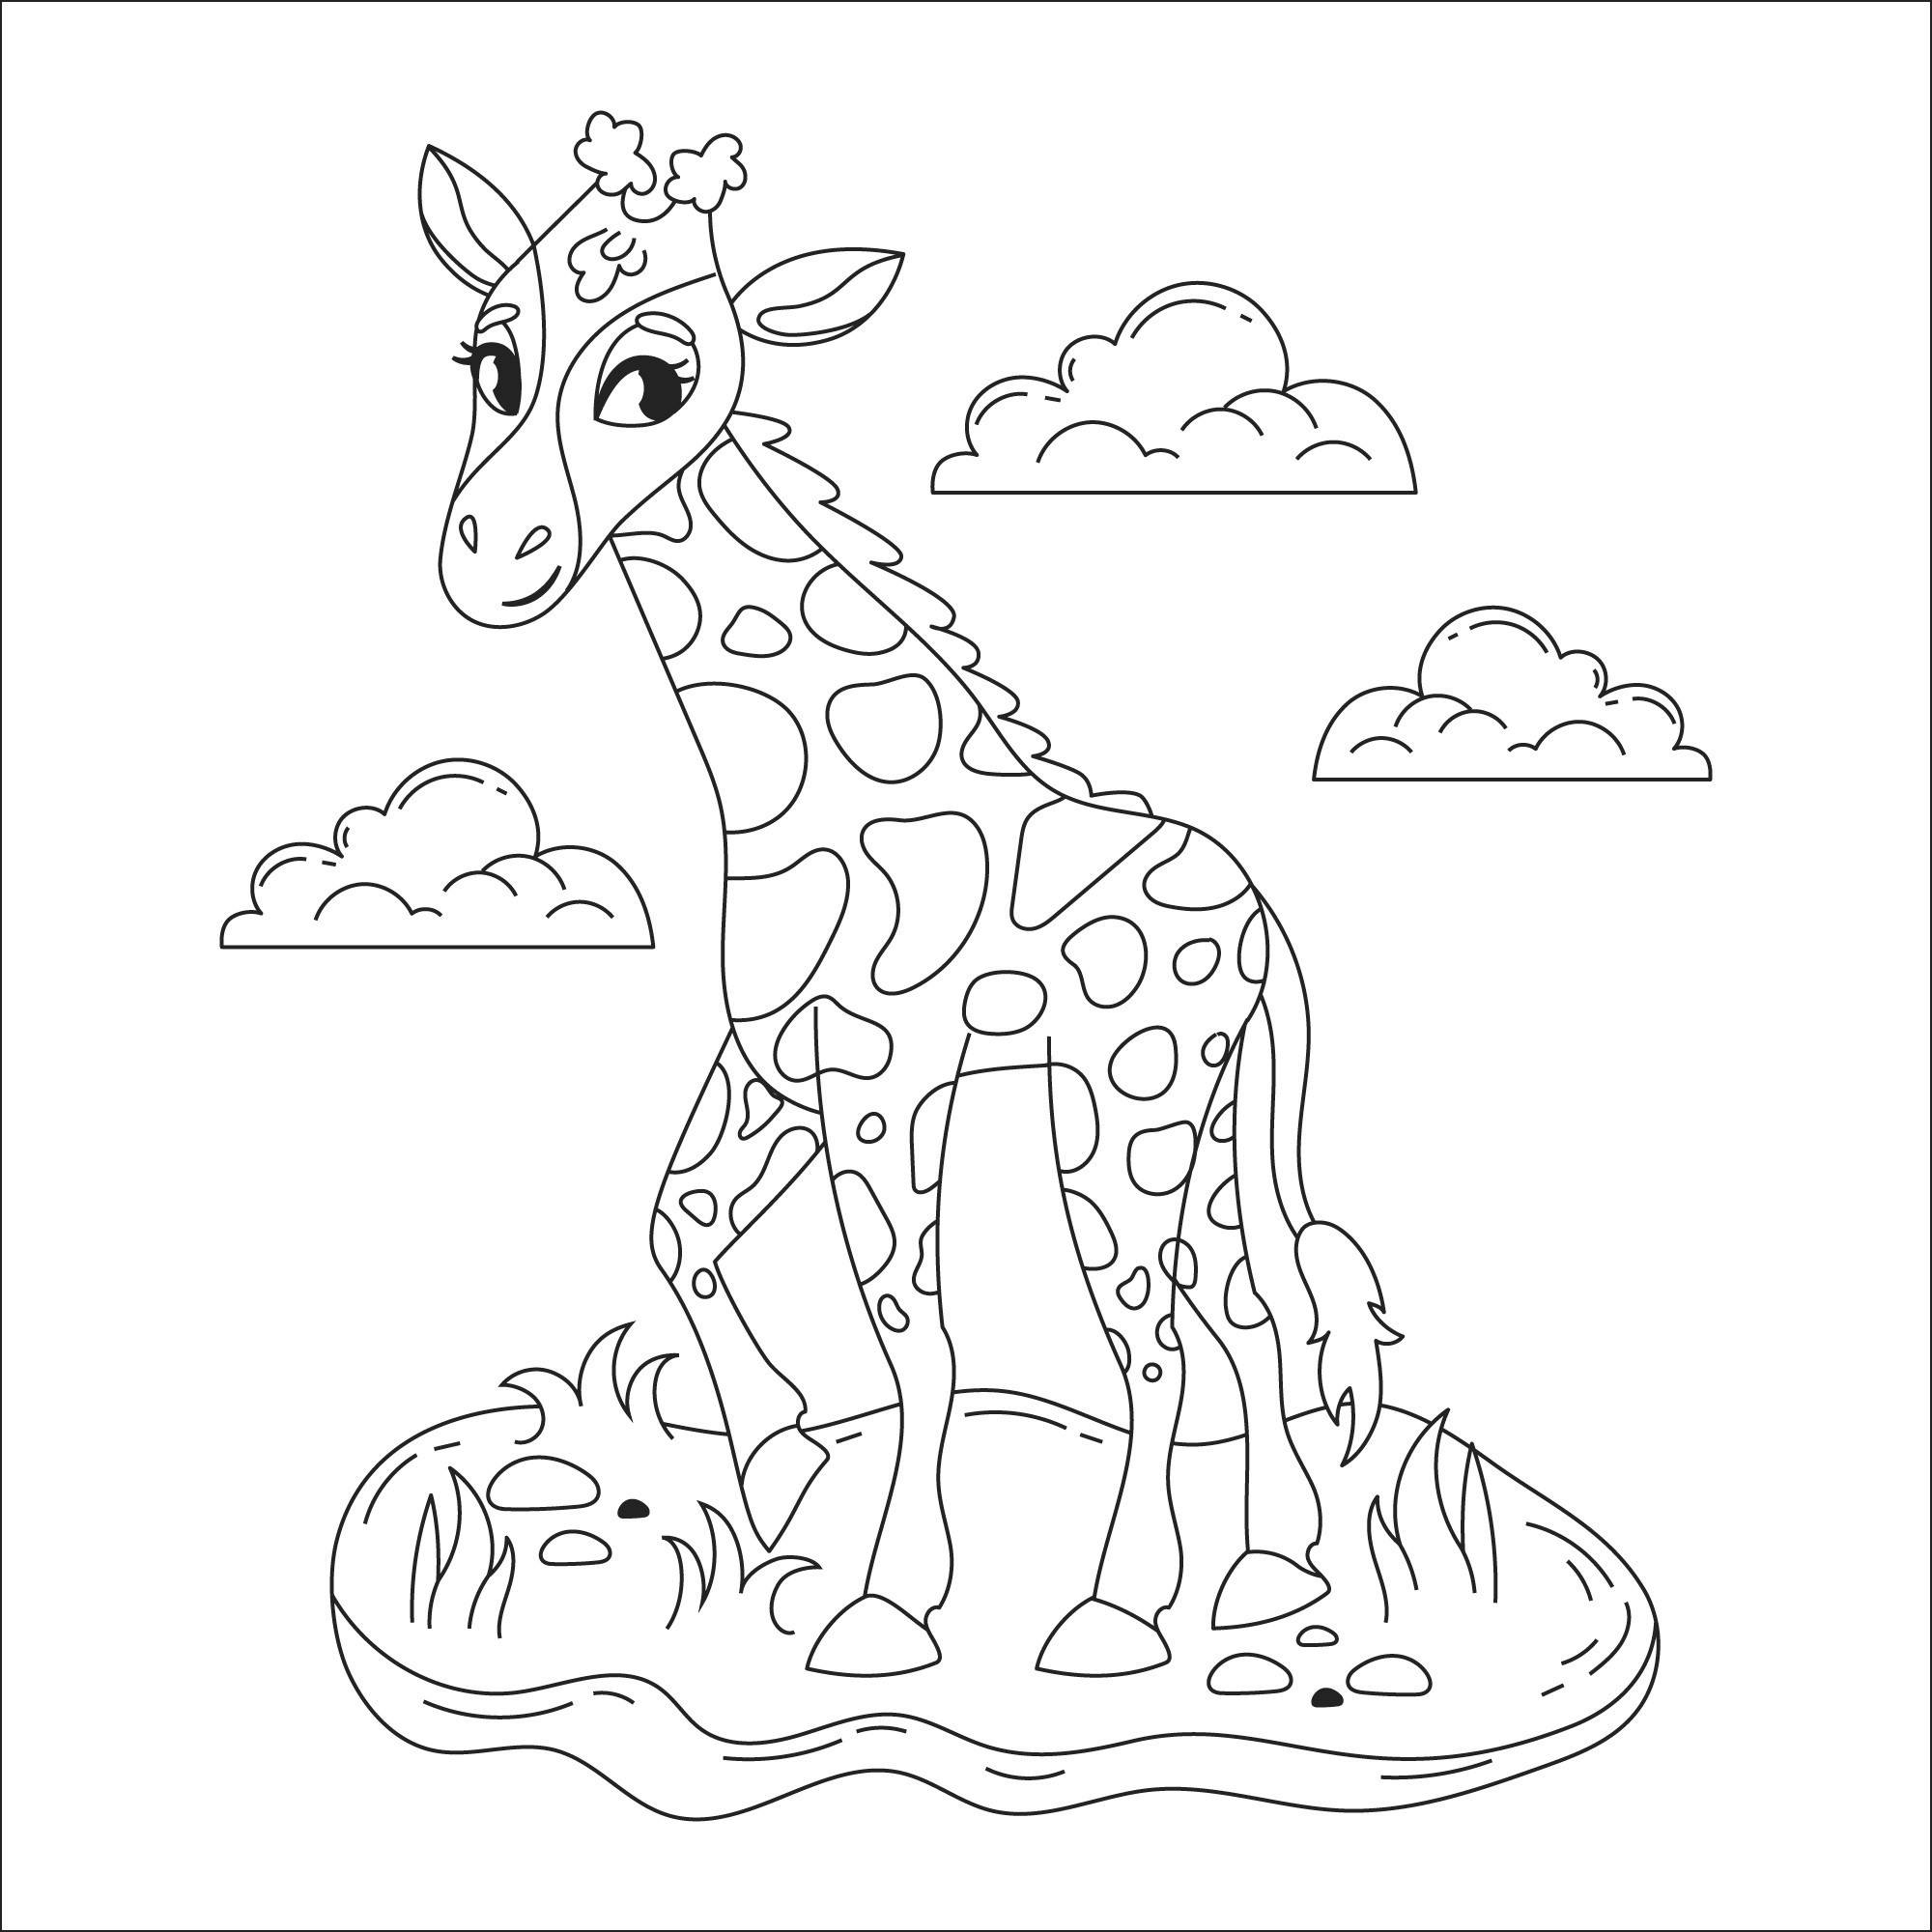 Раскраска для детей: красивый жираф на поляне на фоне облаков